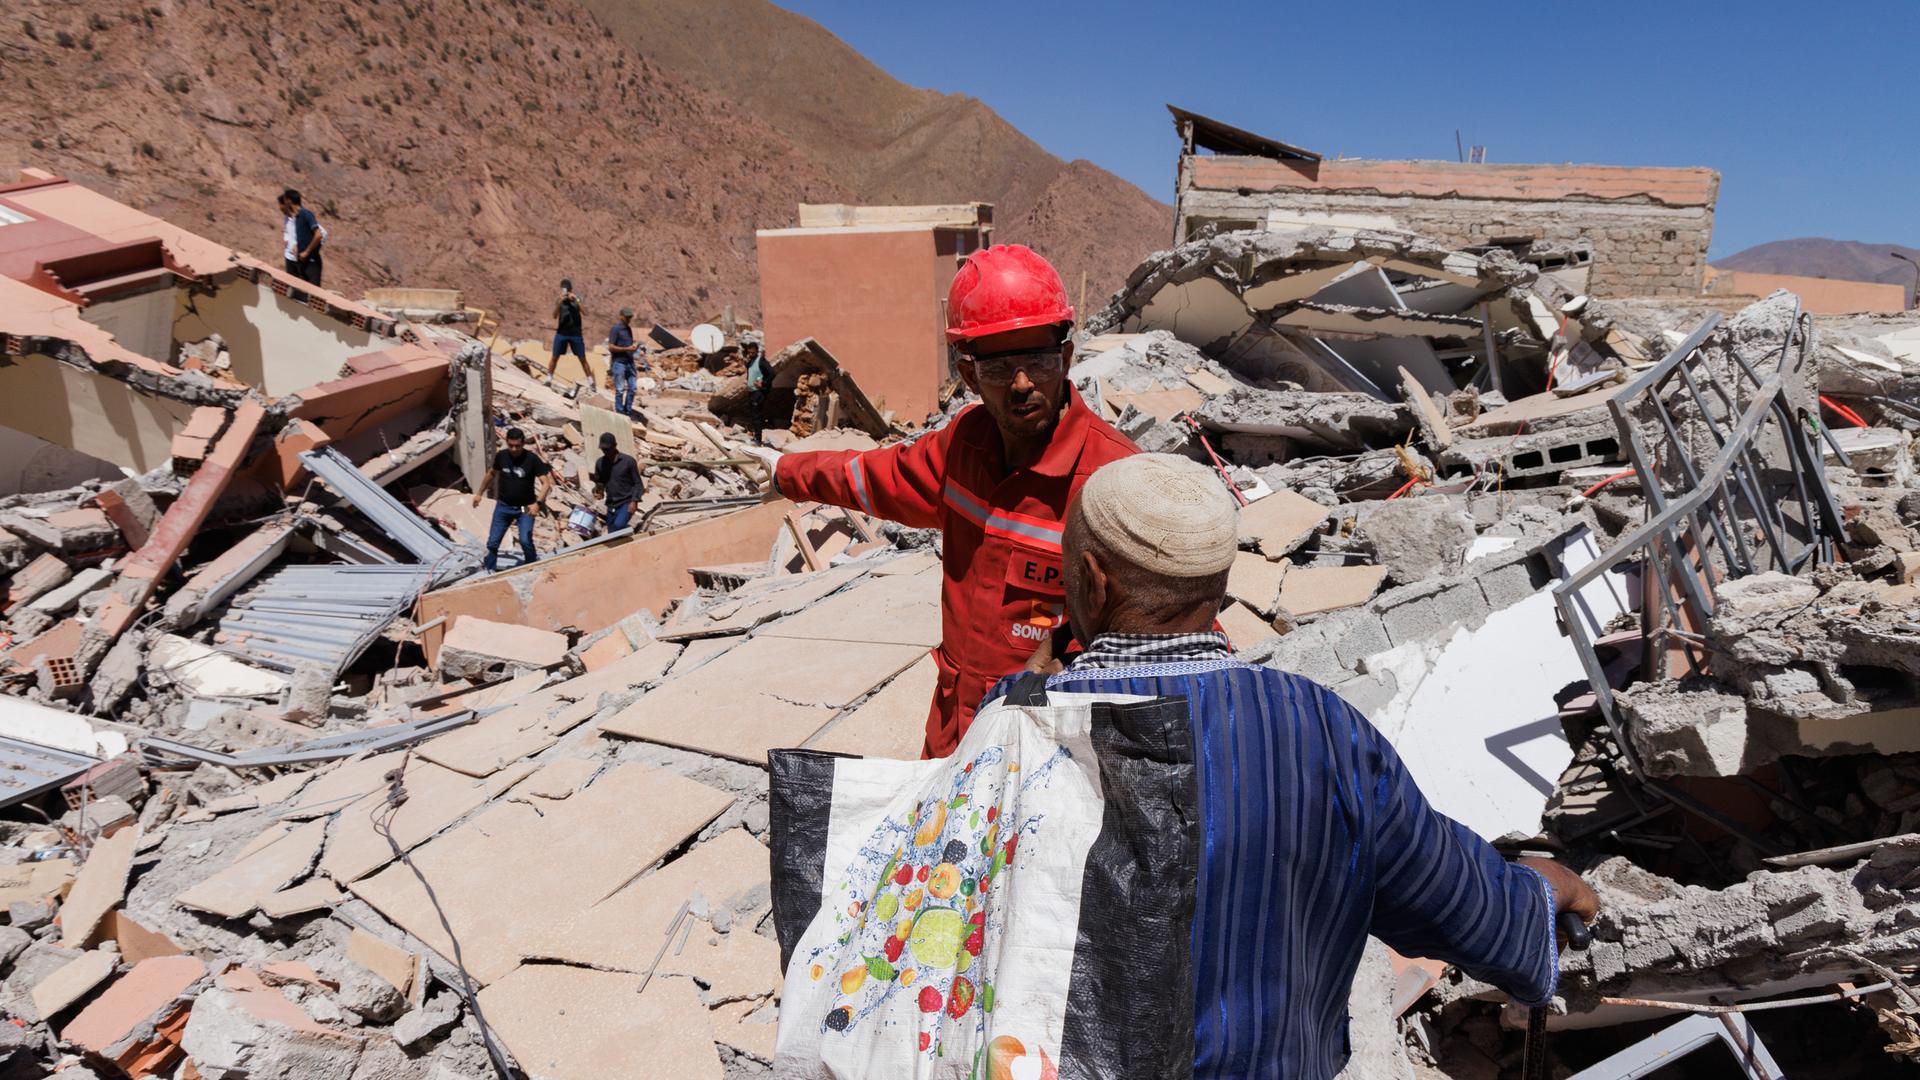 Ein Mann mit Helm und Schutzweste spricht mit einem Zivilisten inmitten völlig zerstörter Häuser vor einem Berghang.